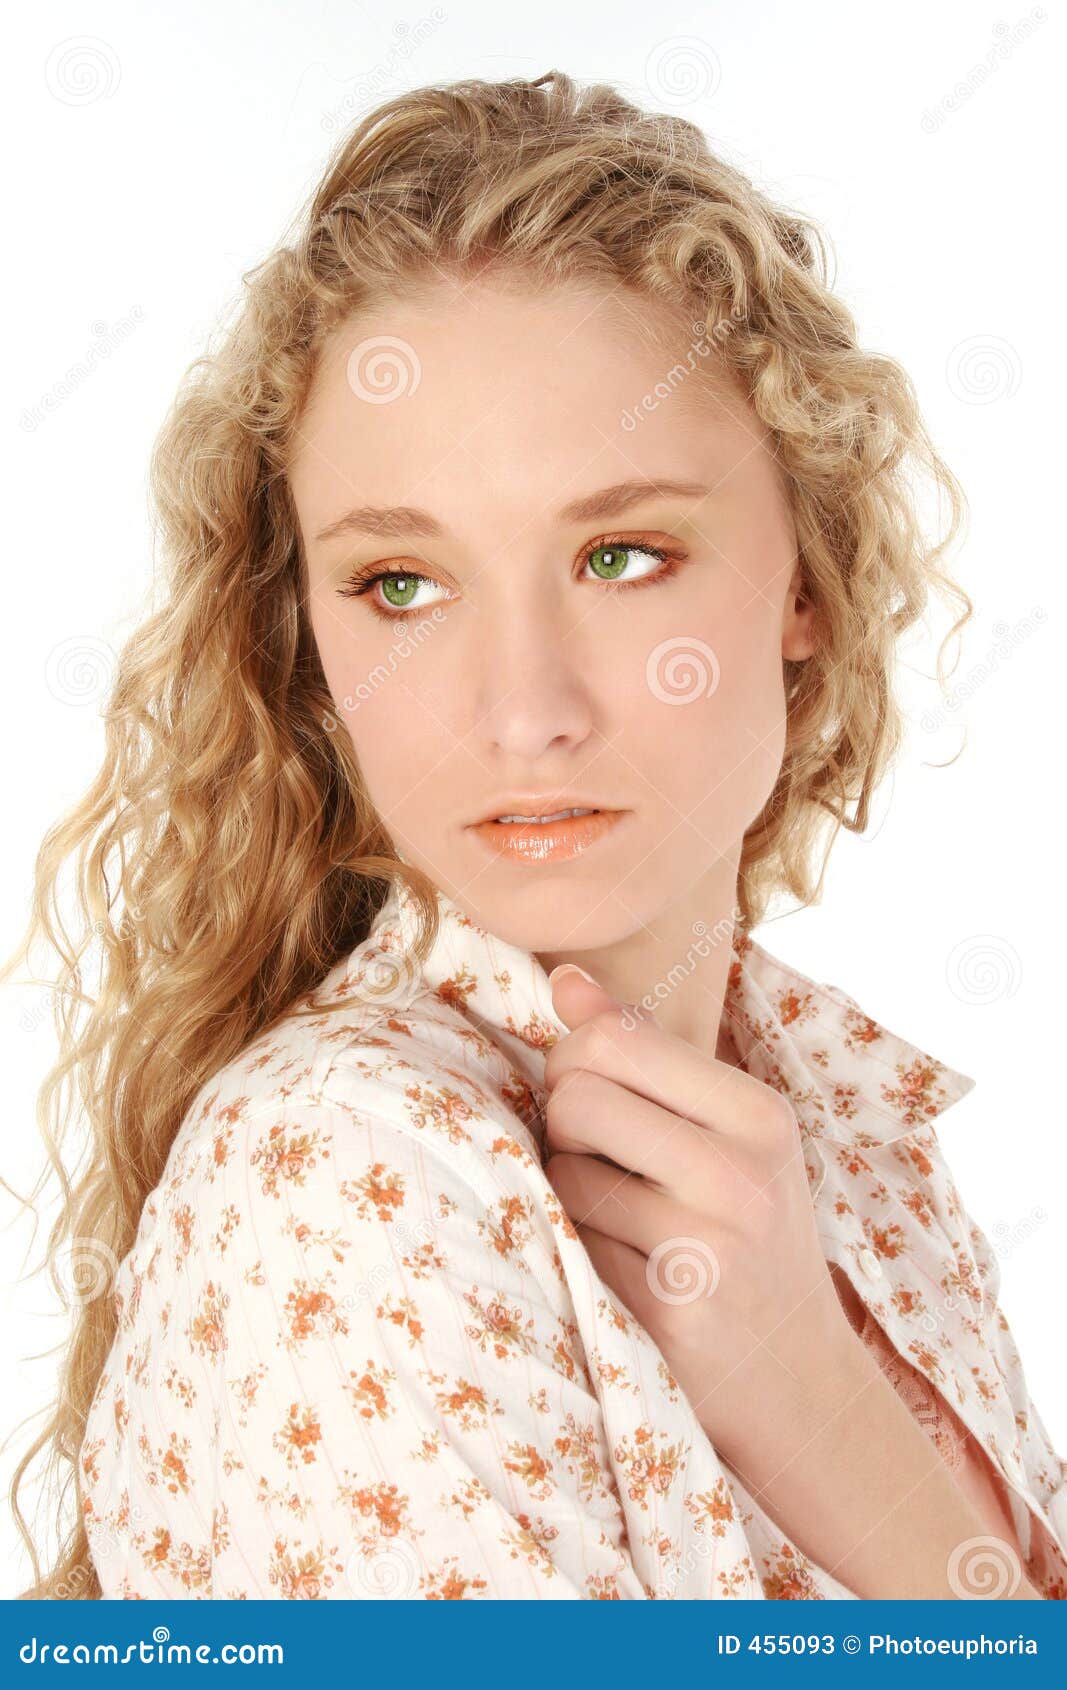 Blonde Hair Green Eyes stock image. Image of women, glamorous - 455093